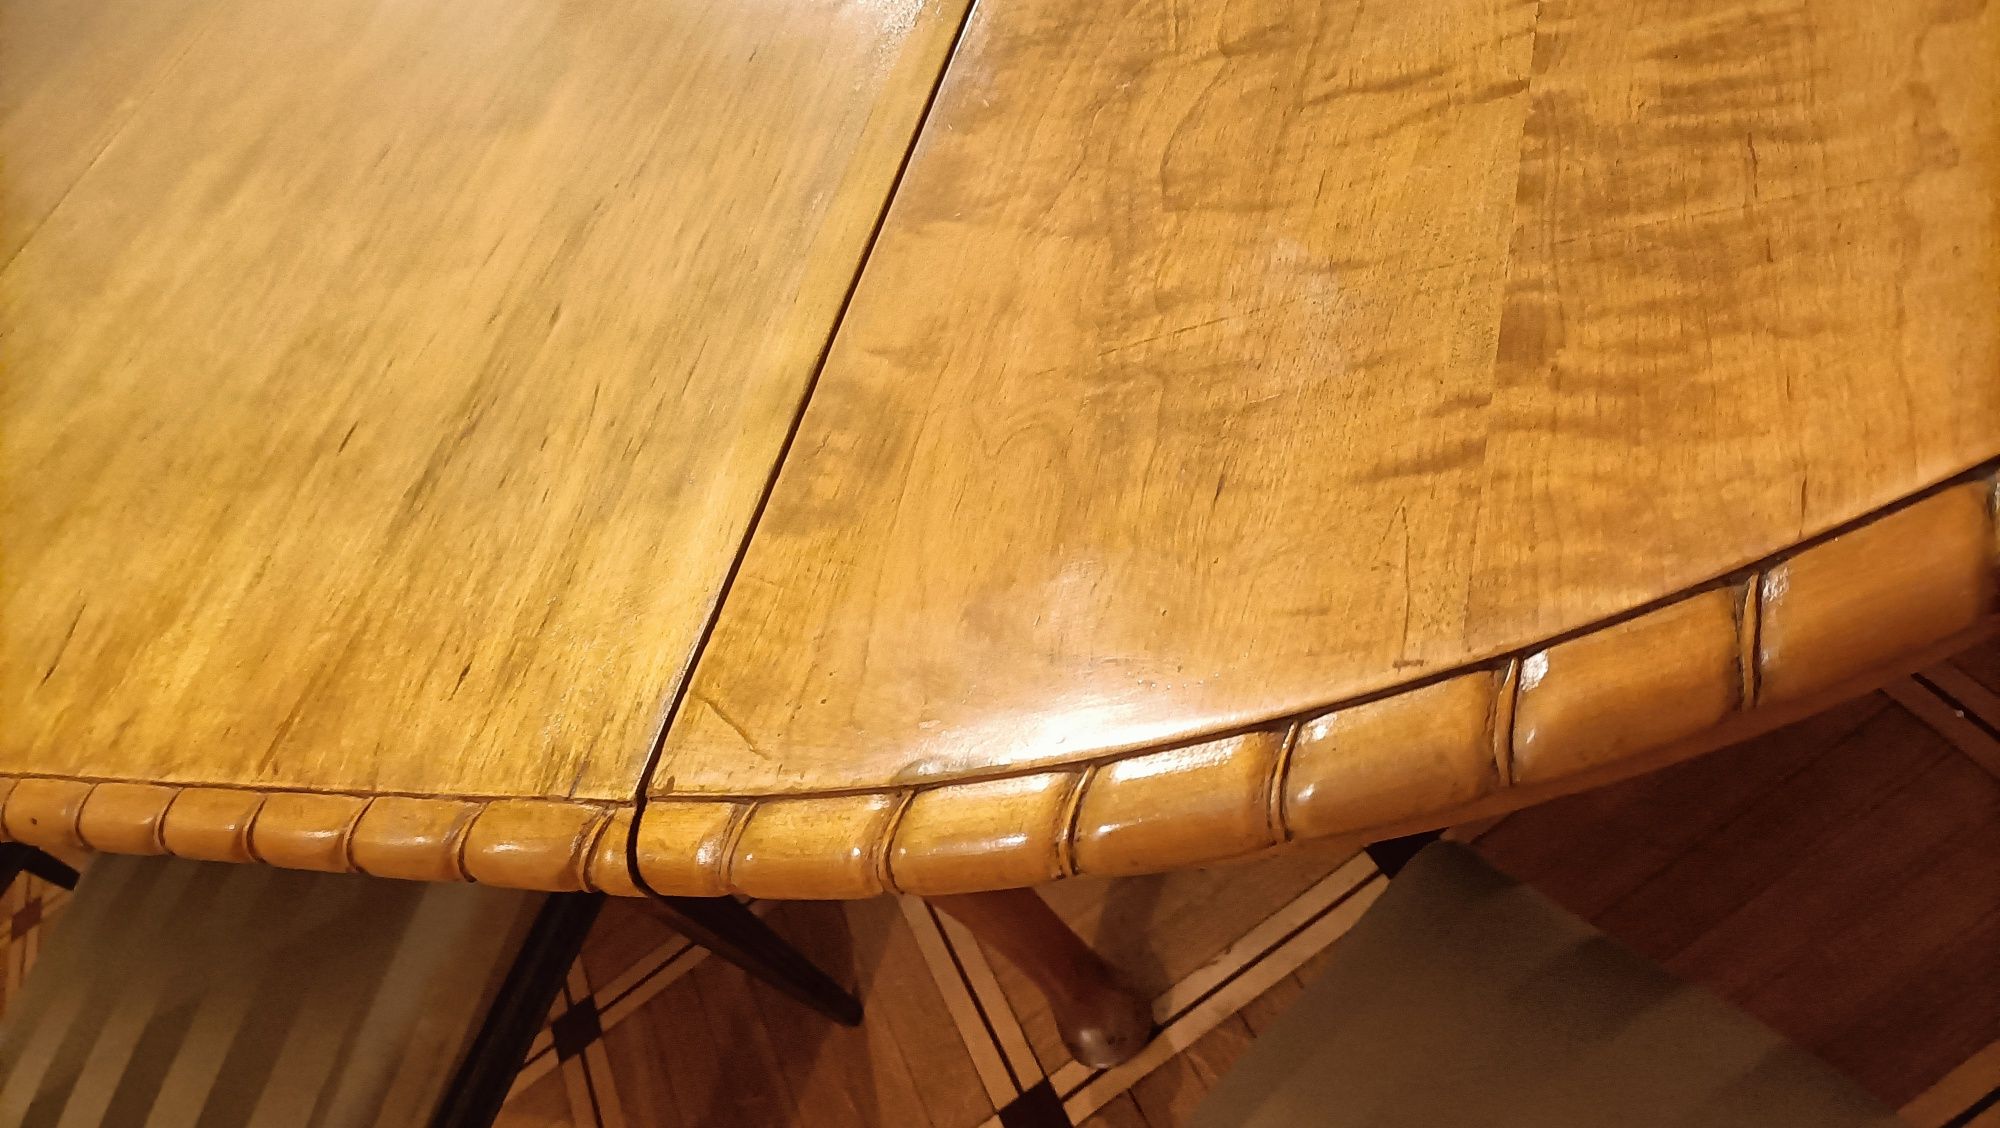 Ogromny stół w stylu Biedermeier lite drewno rozkładany 270x130